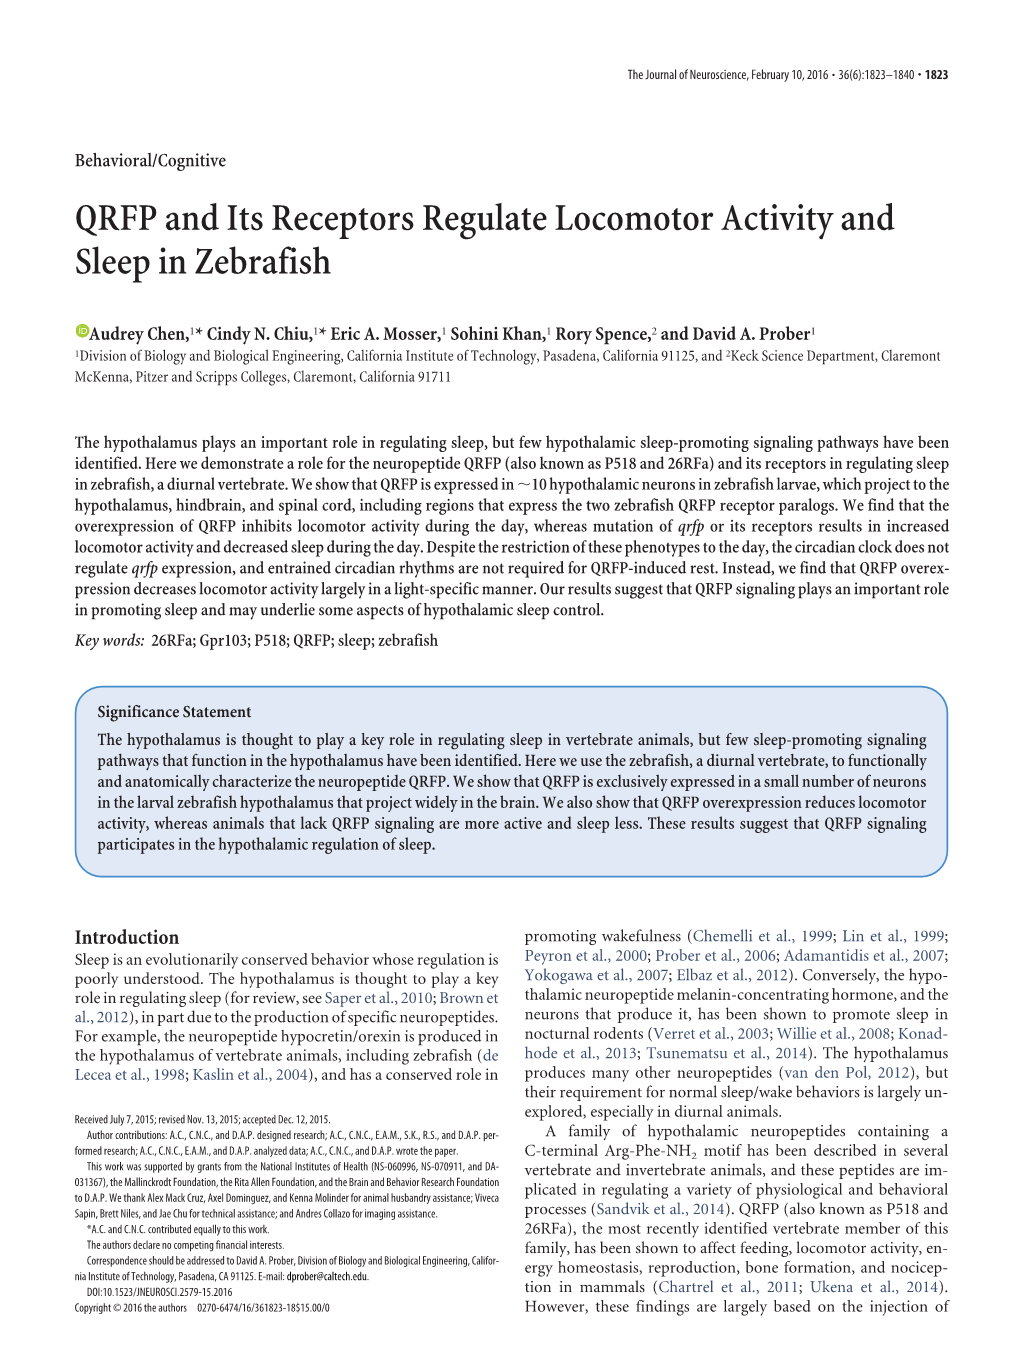 QRFP and Its Receptors Regulate Locomotor Activity and Sleep in Zebrafish